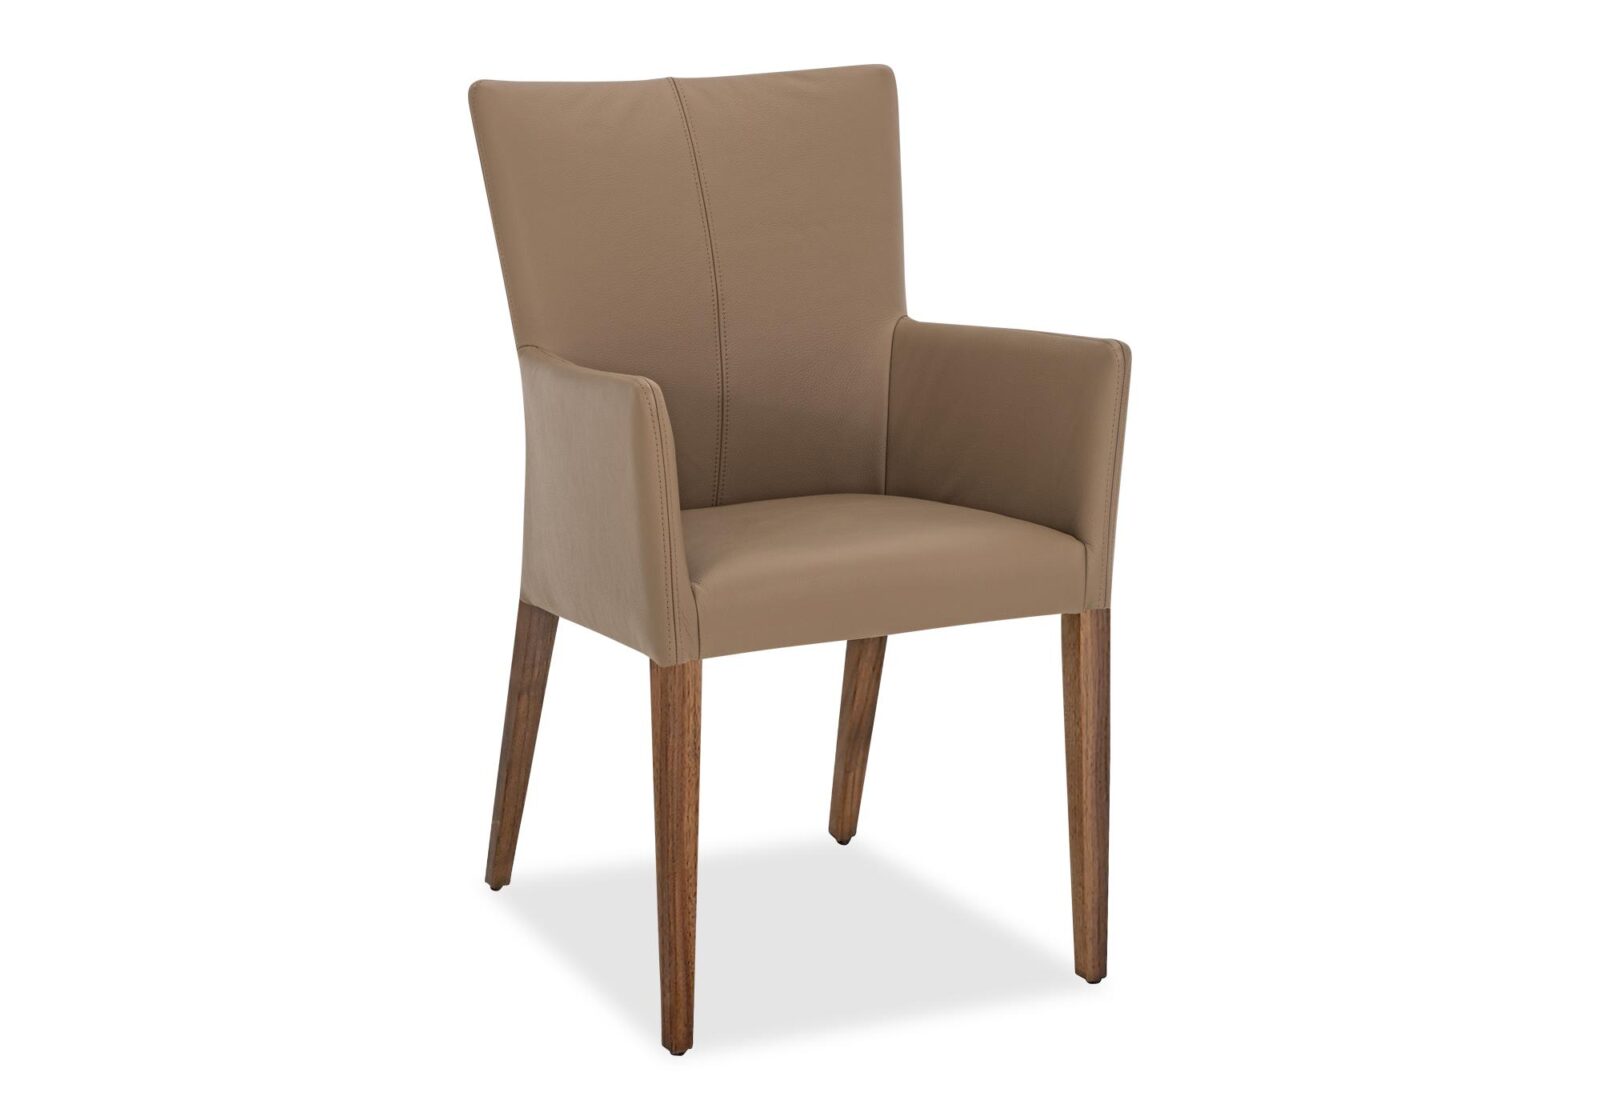 Stuhl mit Armlehnen Delta. Bezug: Leder. Farbe: Dust. Erhältlich bei Möbel Gallati.